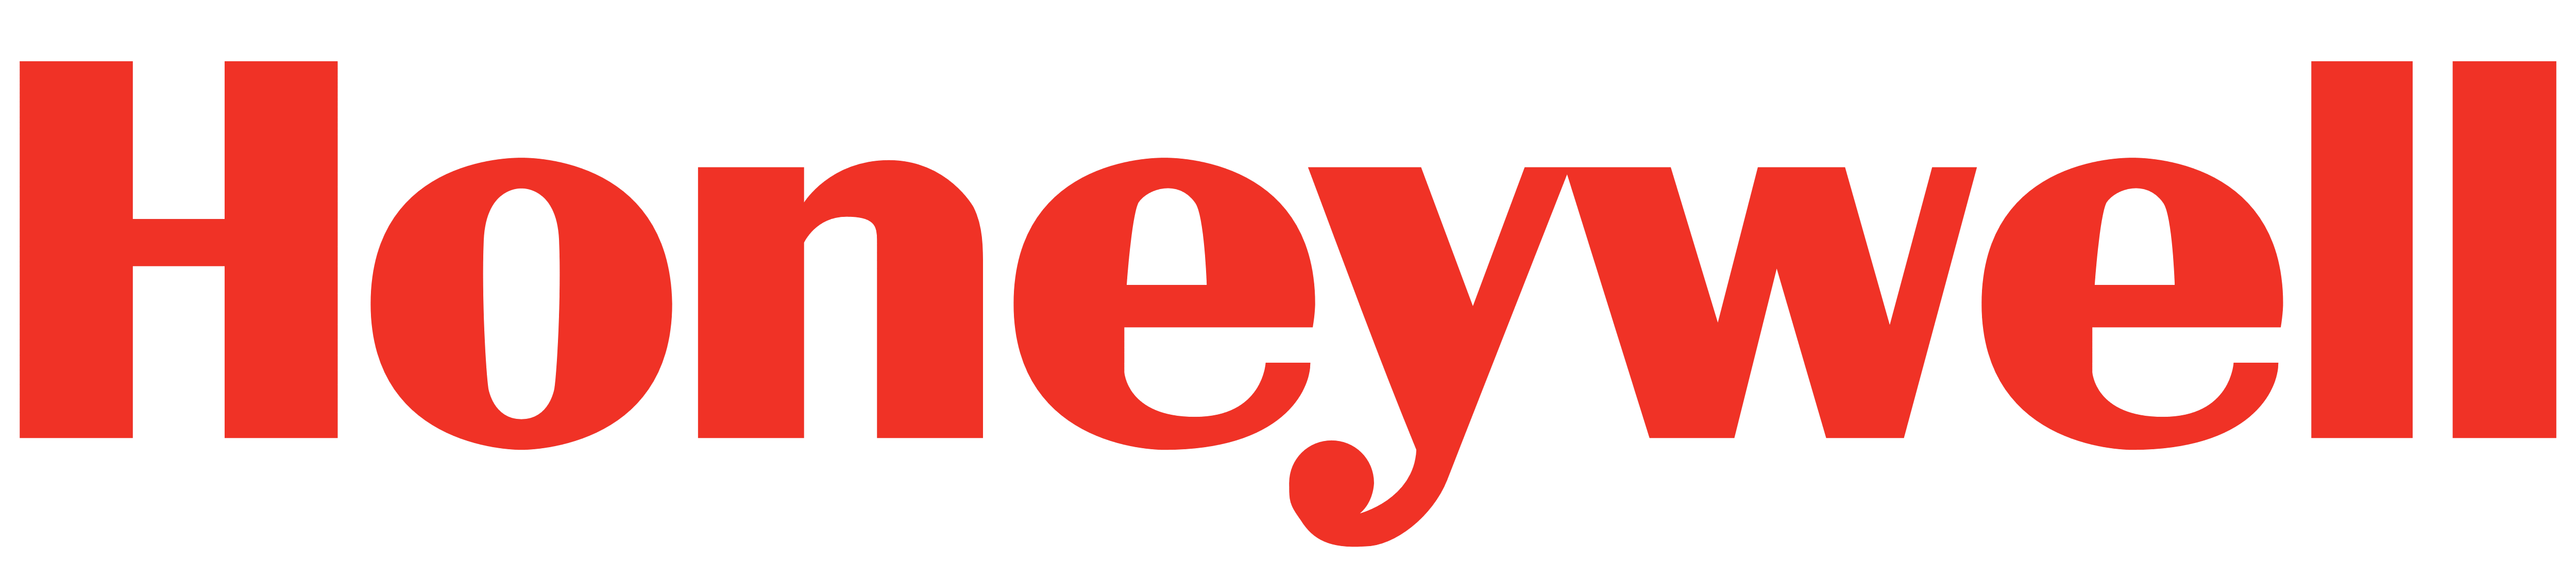 Honeywell logo 1 - meilleures applications